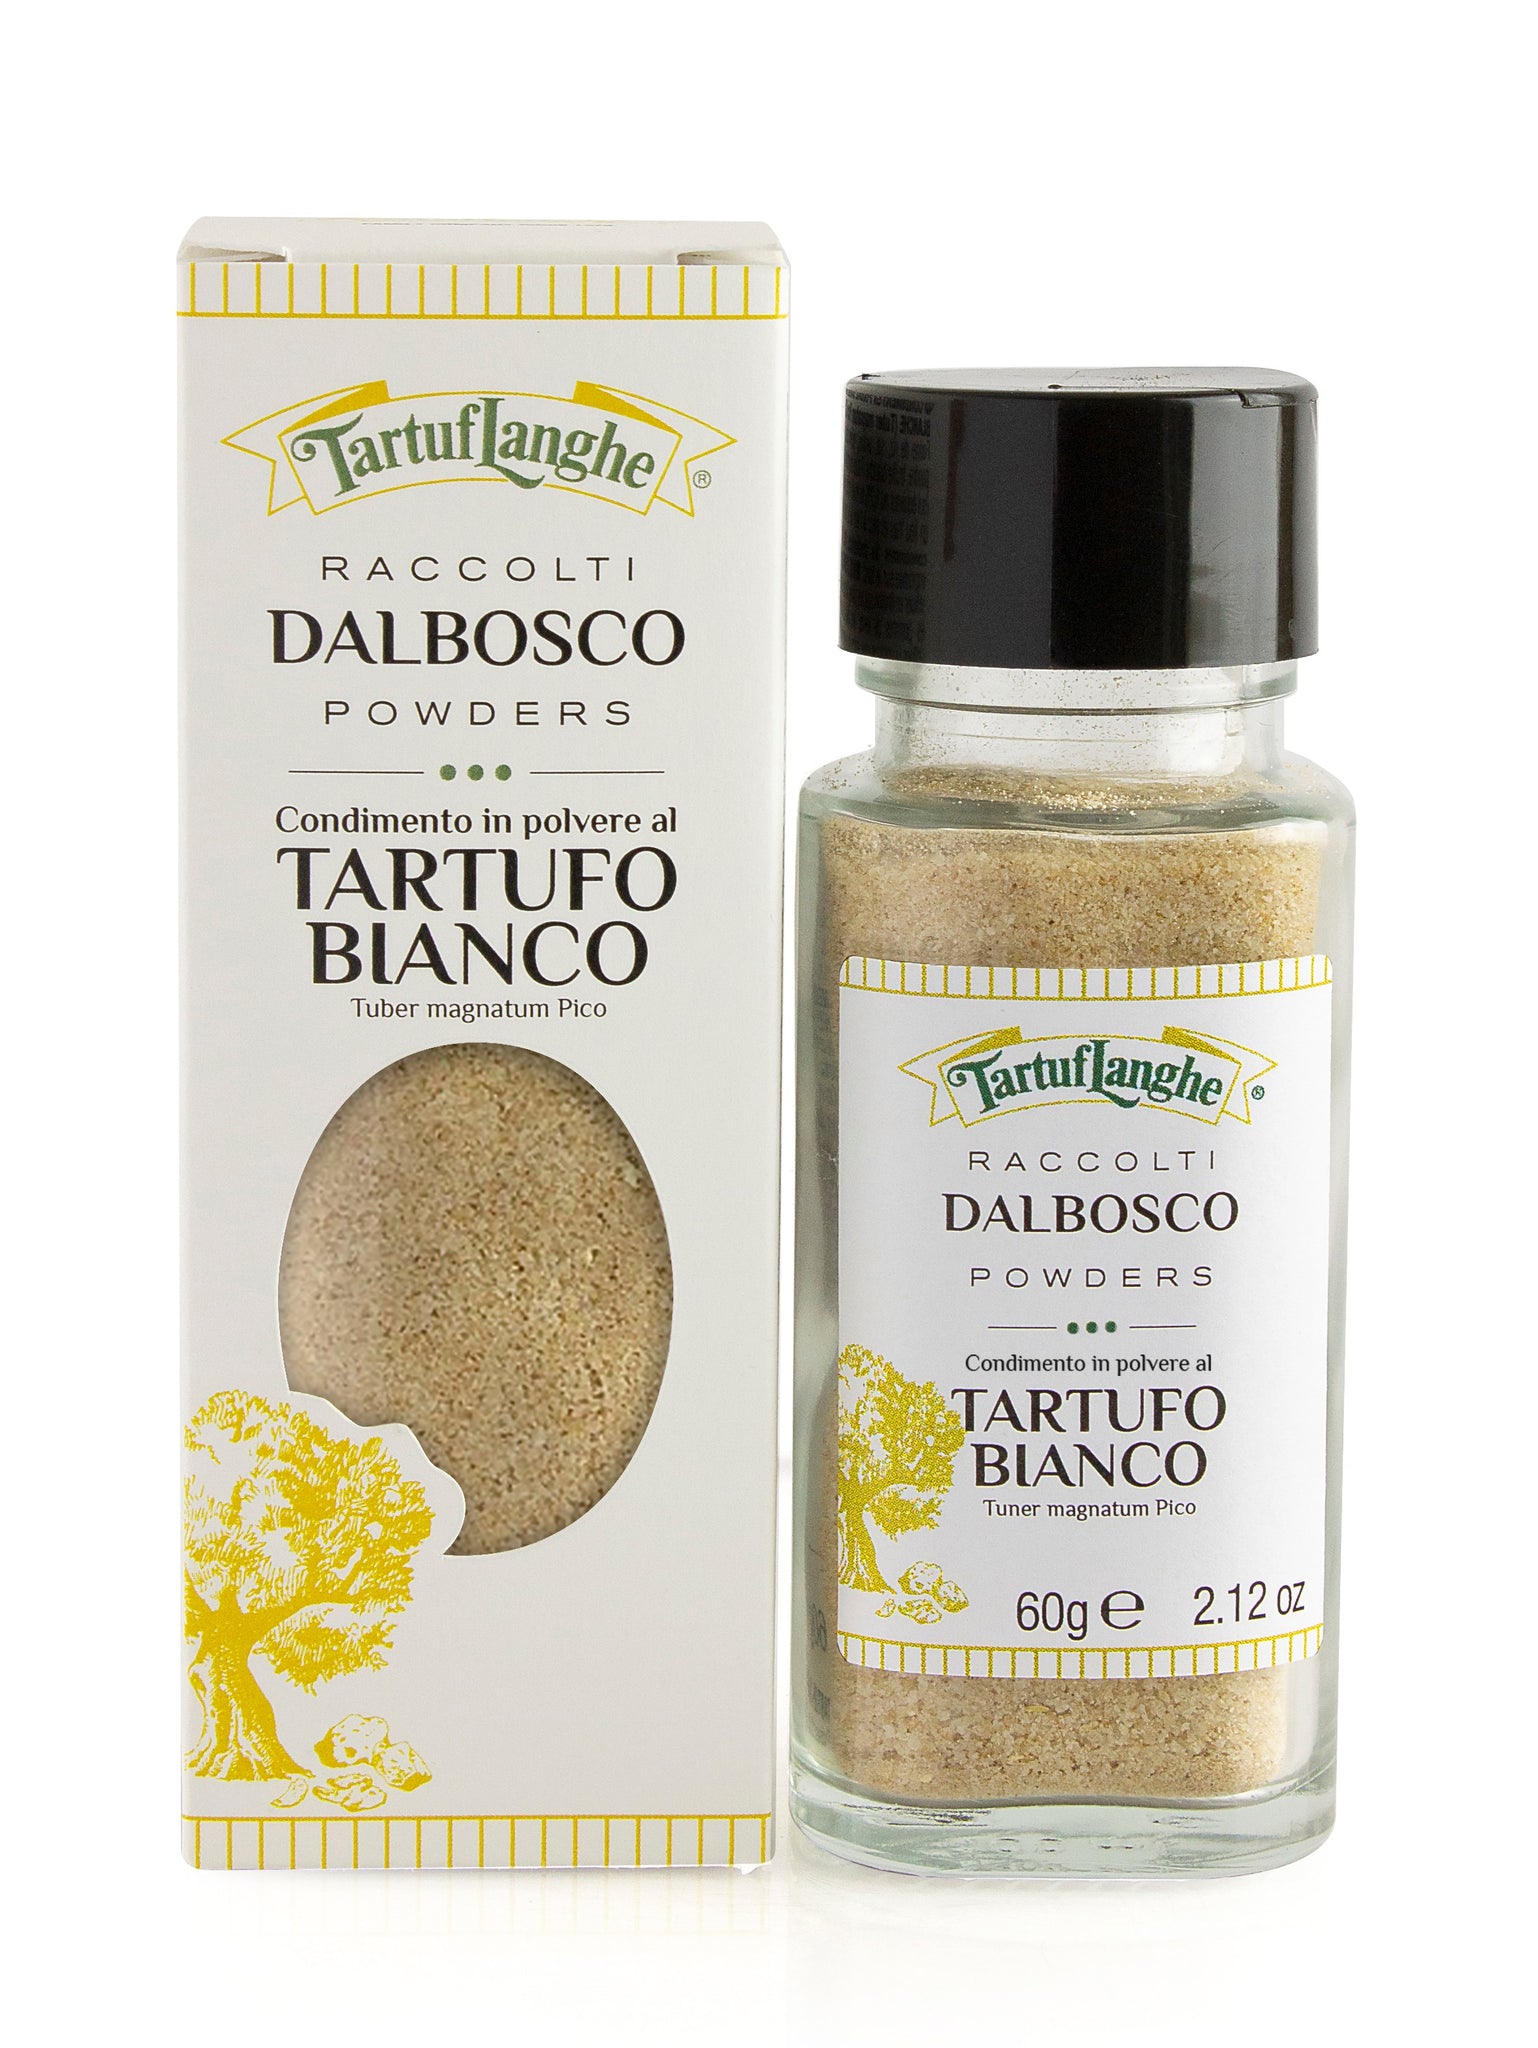 White Truffle Seasoning (Dalbosco)